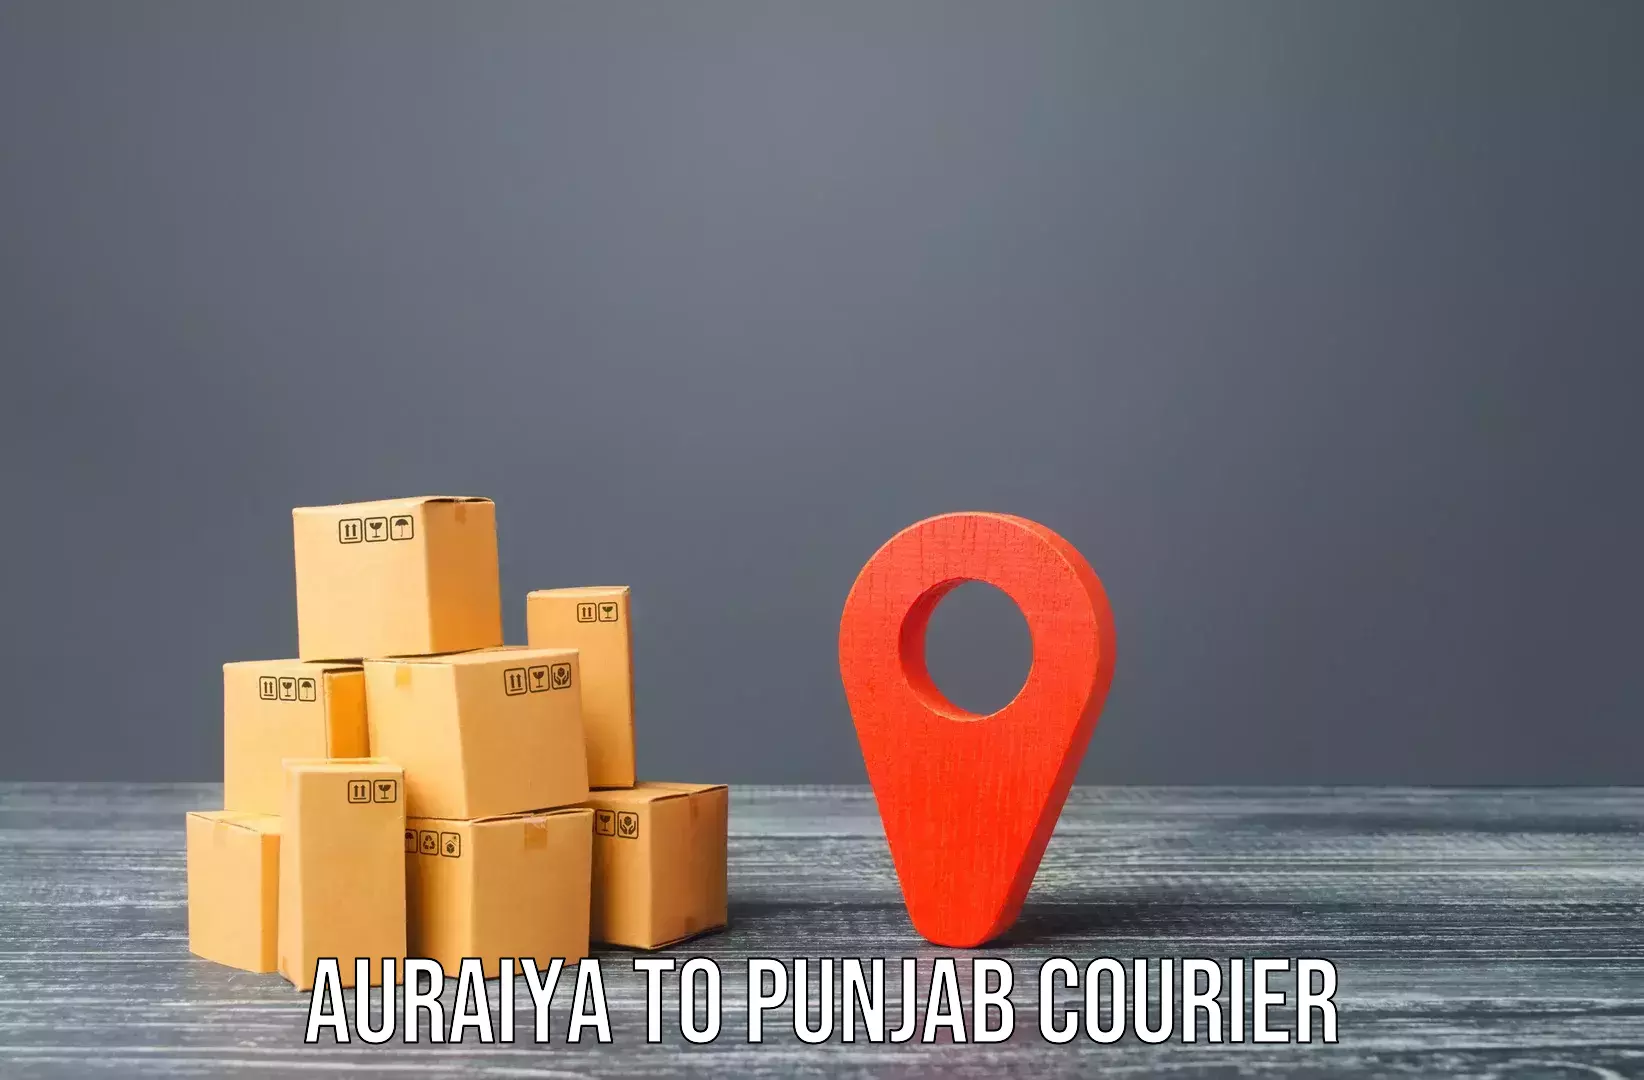 Furniture moving plans Auraiya to Pathankot